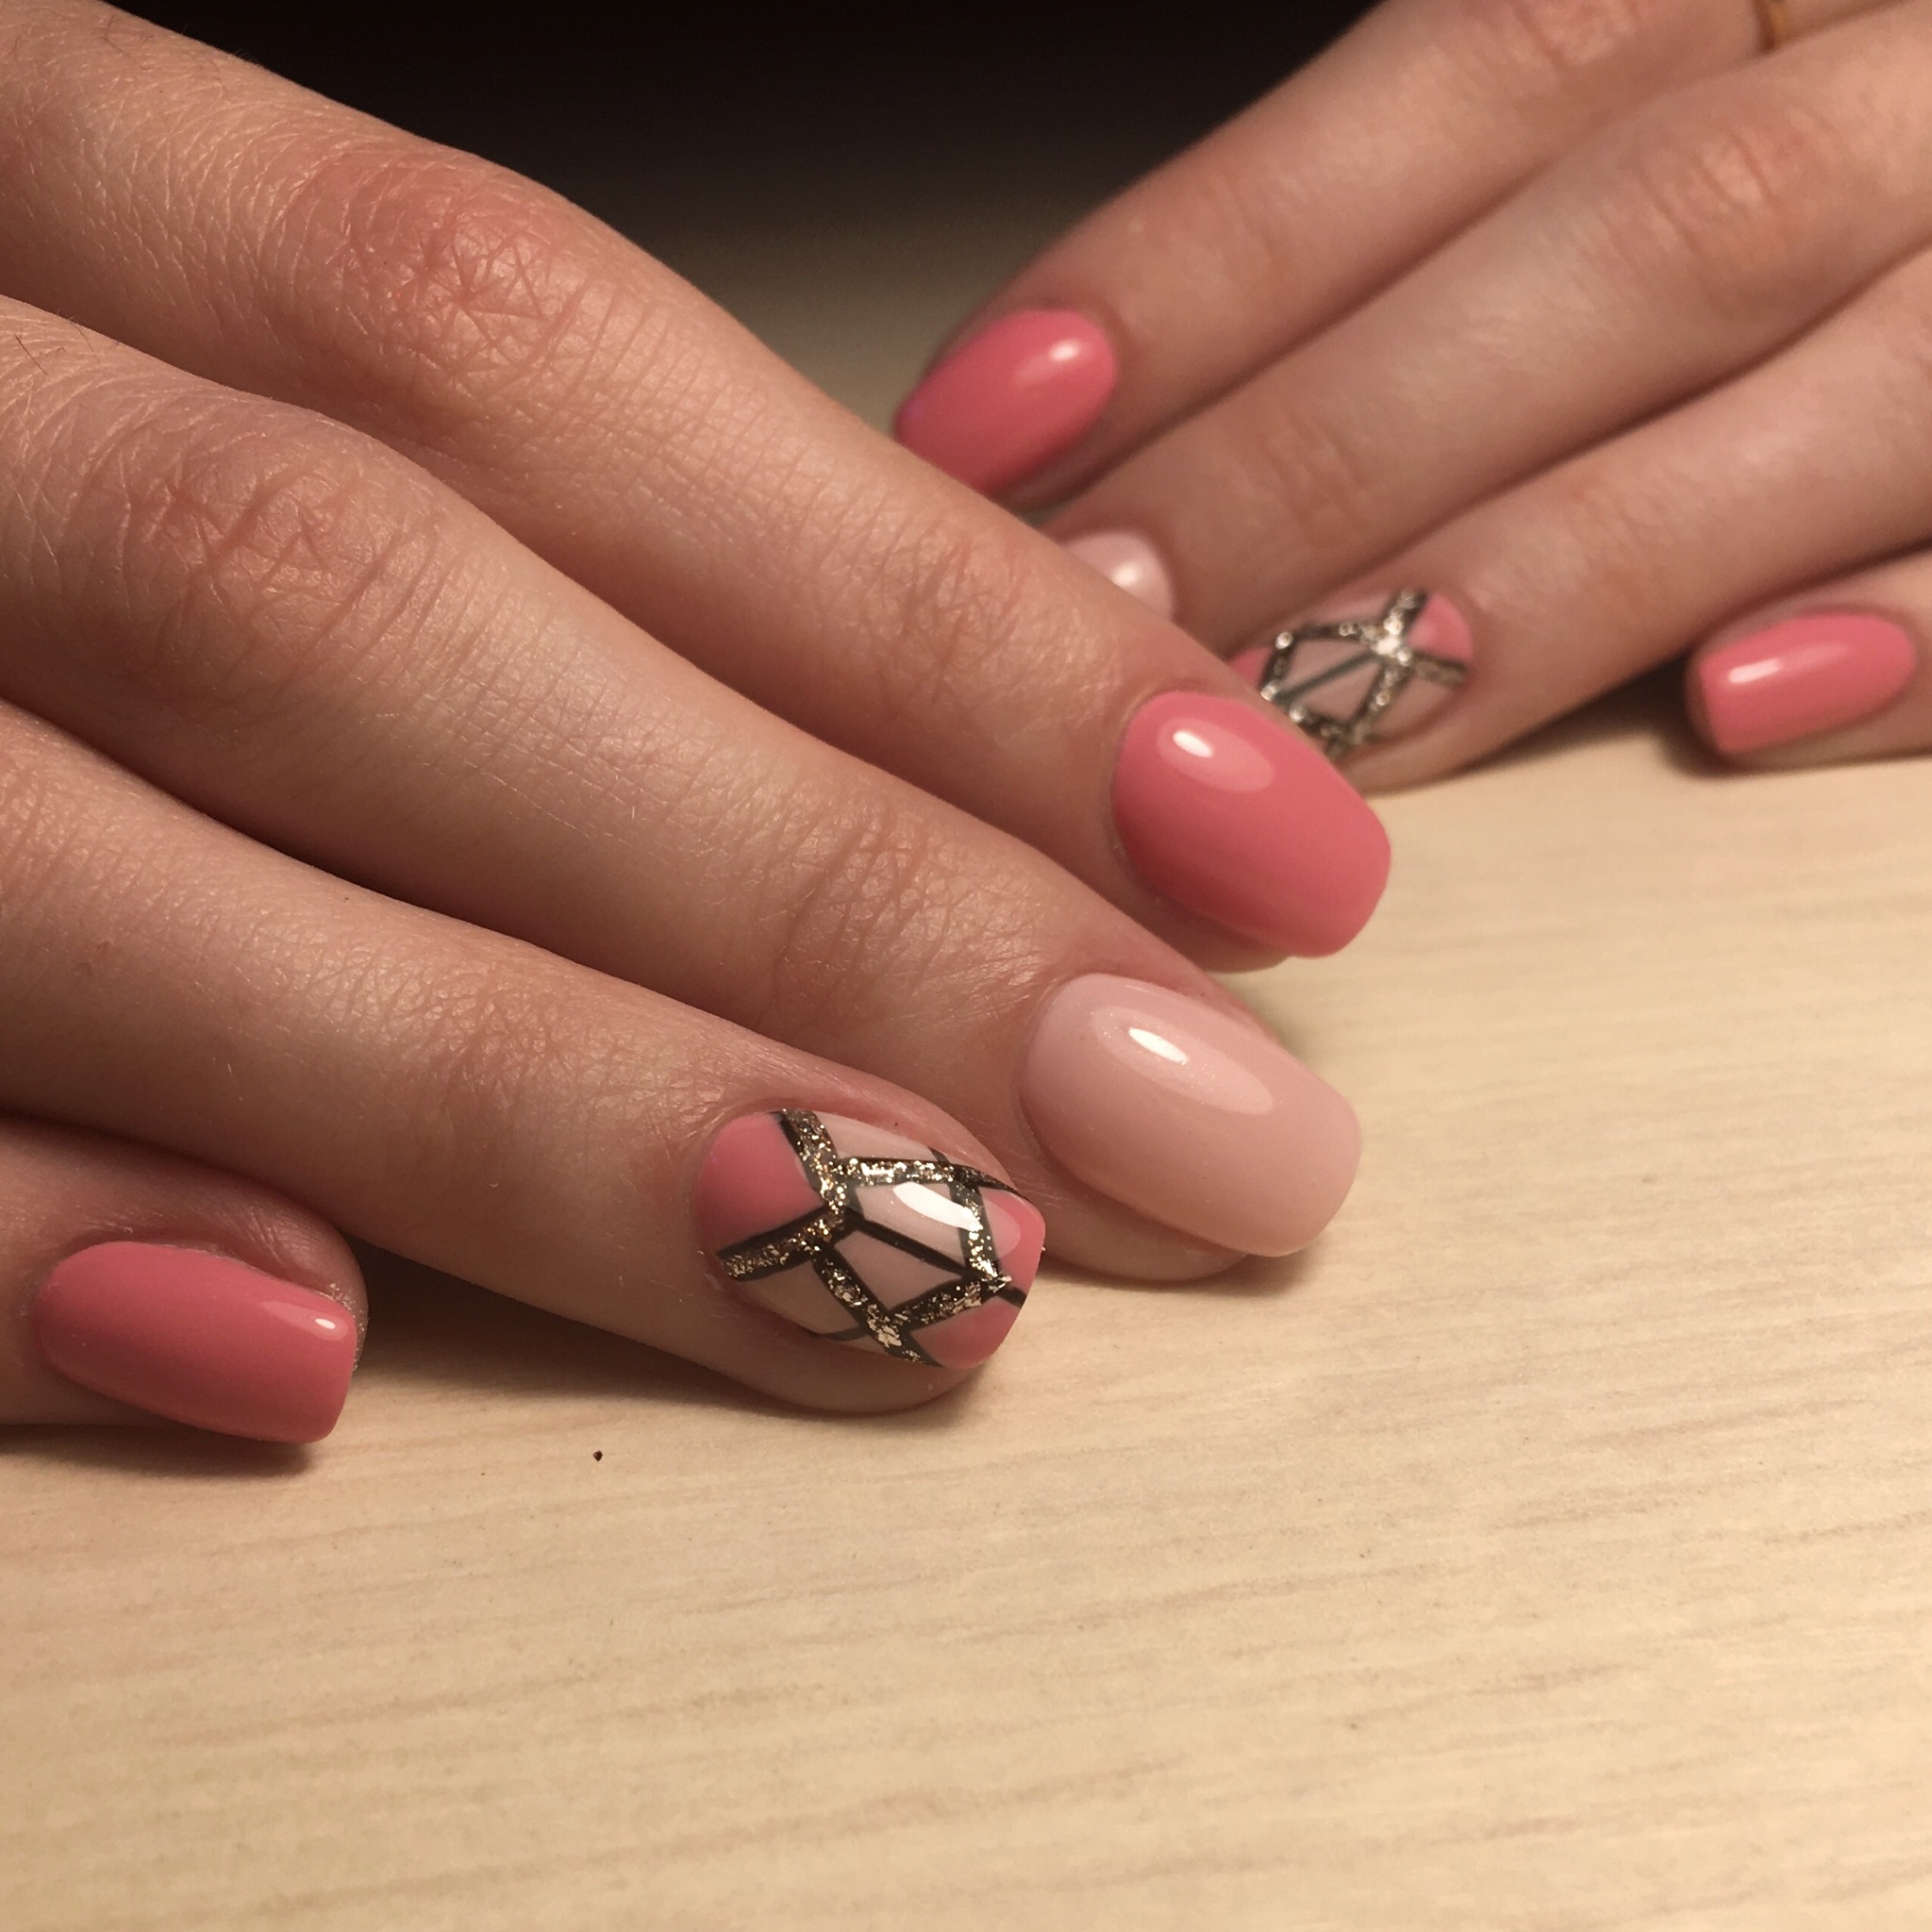 Геометрический маникюр с золотыми блестками в розовом цвете на короткие ногти.